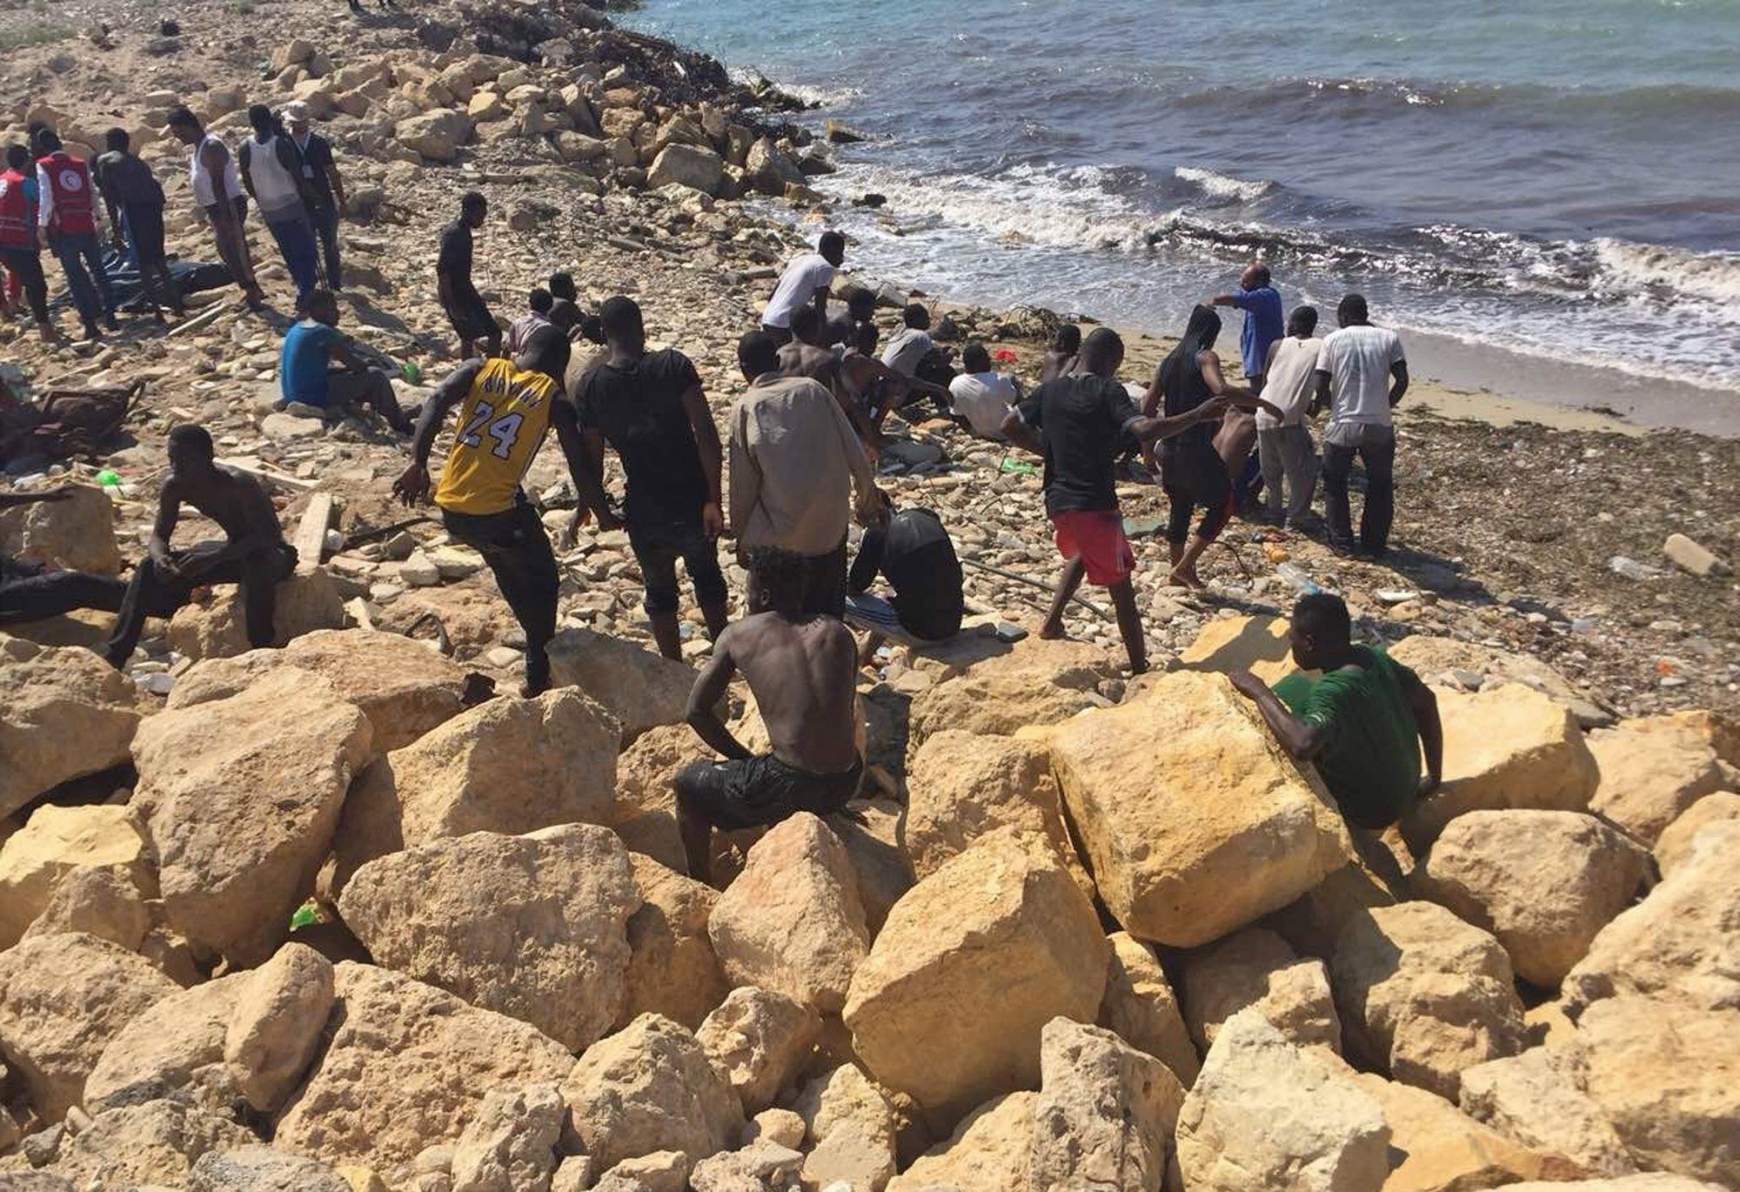 menekultek-a-libiai-partoknal.jpg